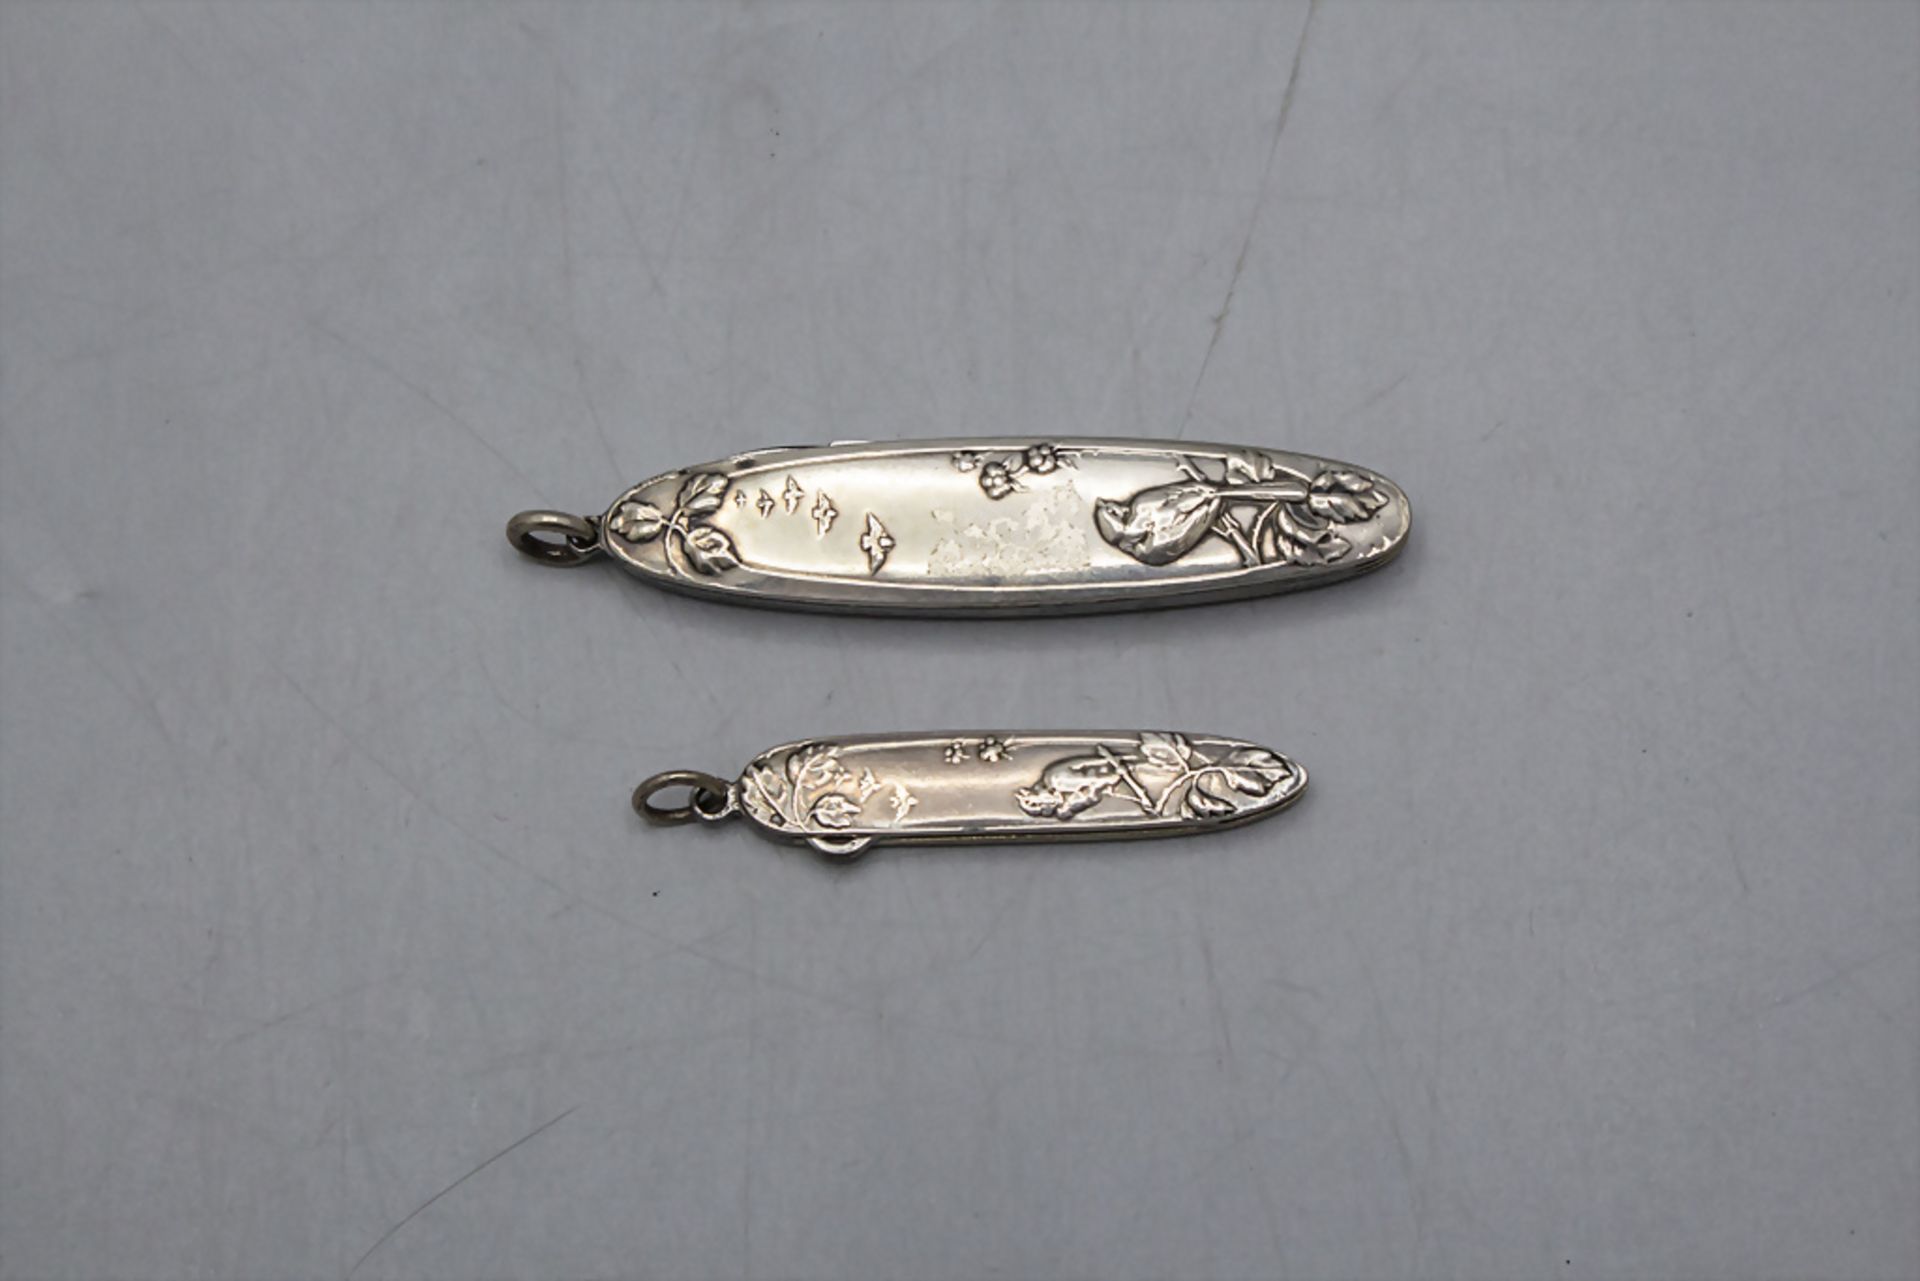 Jugendstil Taschenmesser, Feile und Haken / An Art Nouveau silver pocket knife, file and hook, ...